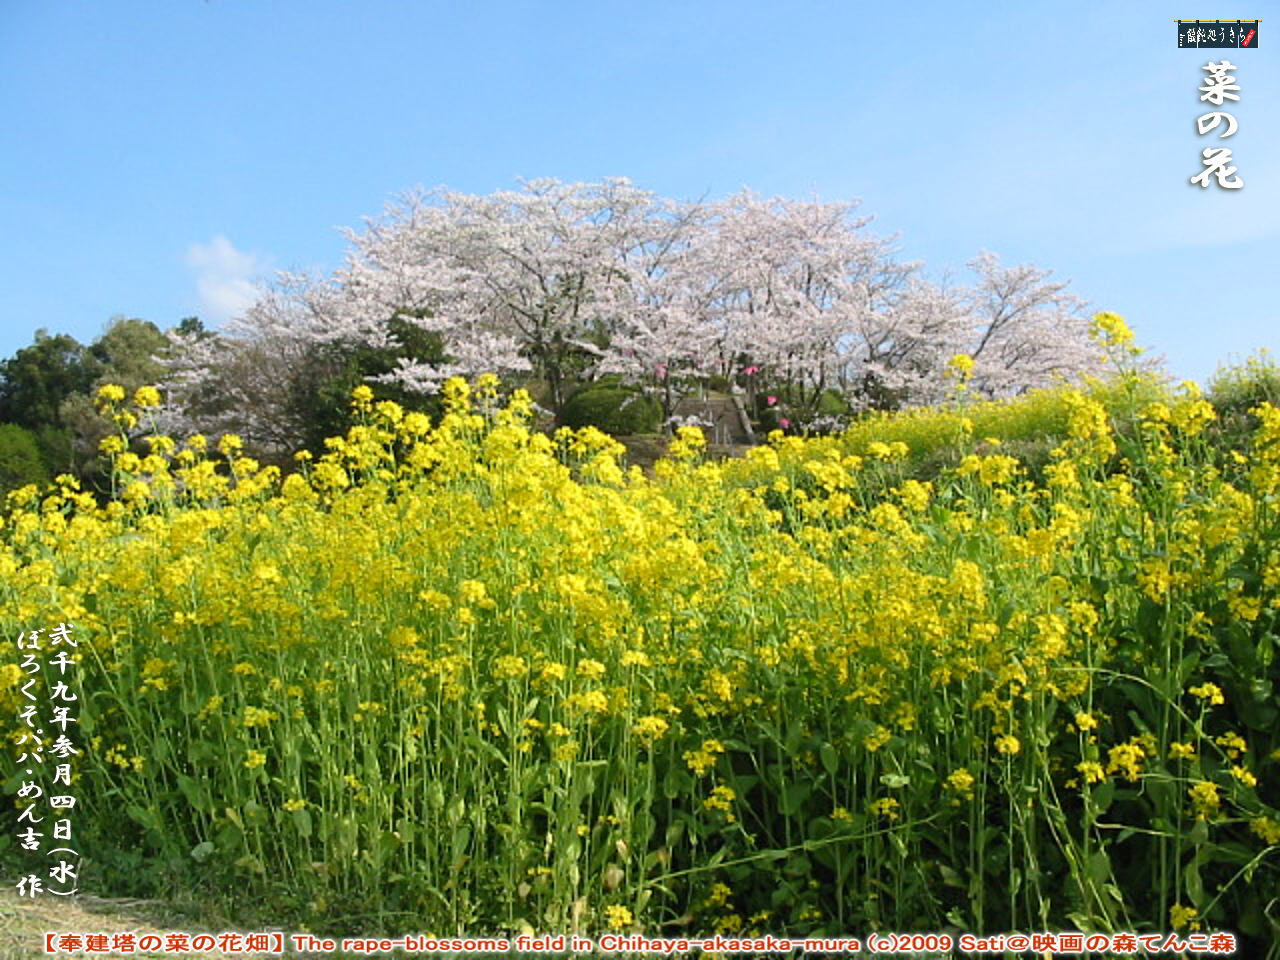 3／4（水）菜の花【奉建塔の菜の花畑】 The rape-blossoms field in Chihaya-akasaka-mura (c)2009 Sati＠映画の森てんこ森 ＠キャツピ＆めん吉の【ぼろくそパパの独り言】
　　　　▼クリックで1280x960pxlsに拡大します。